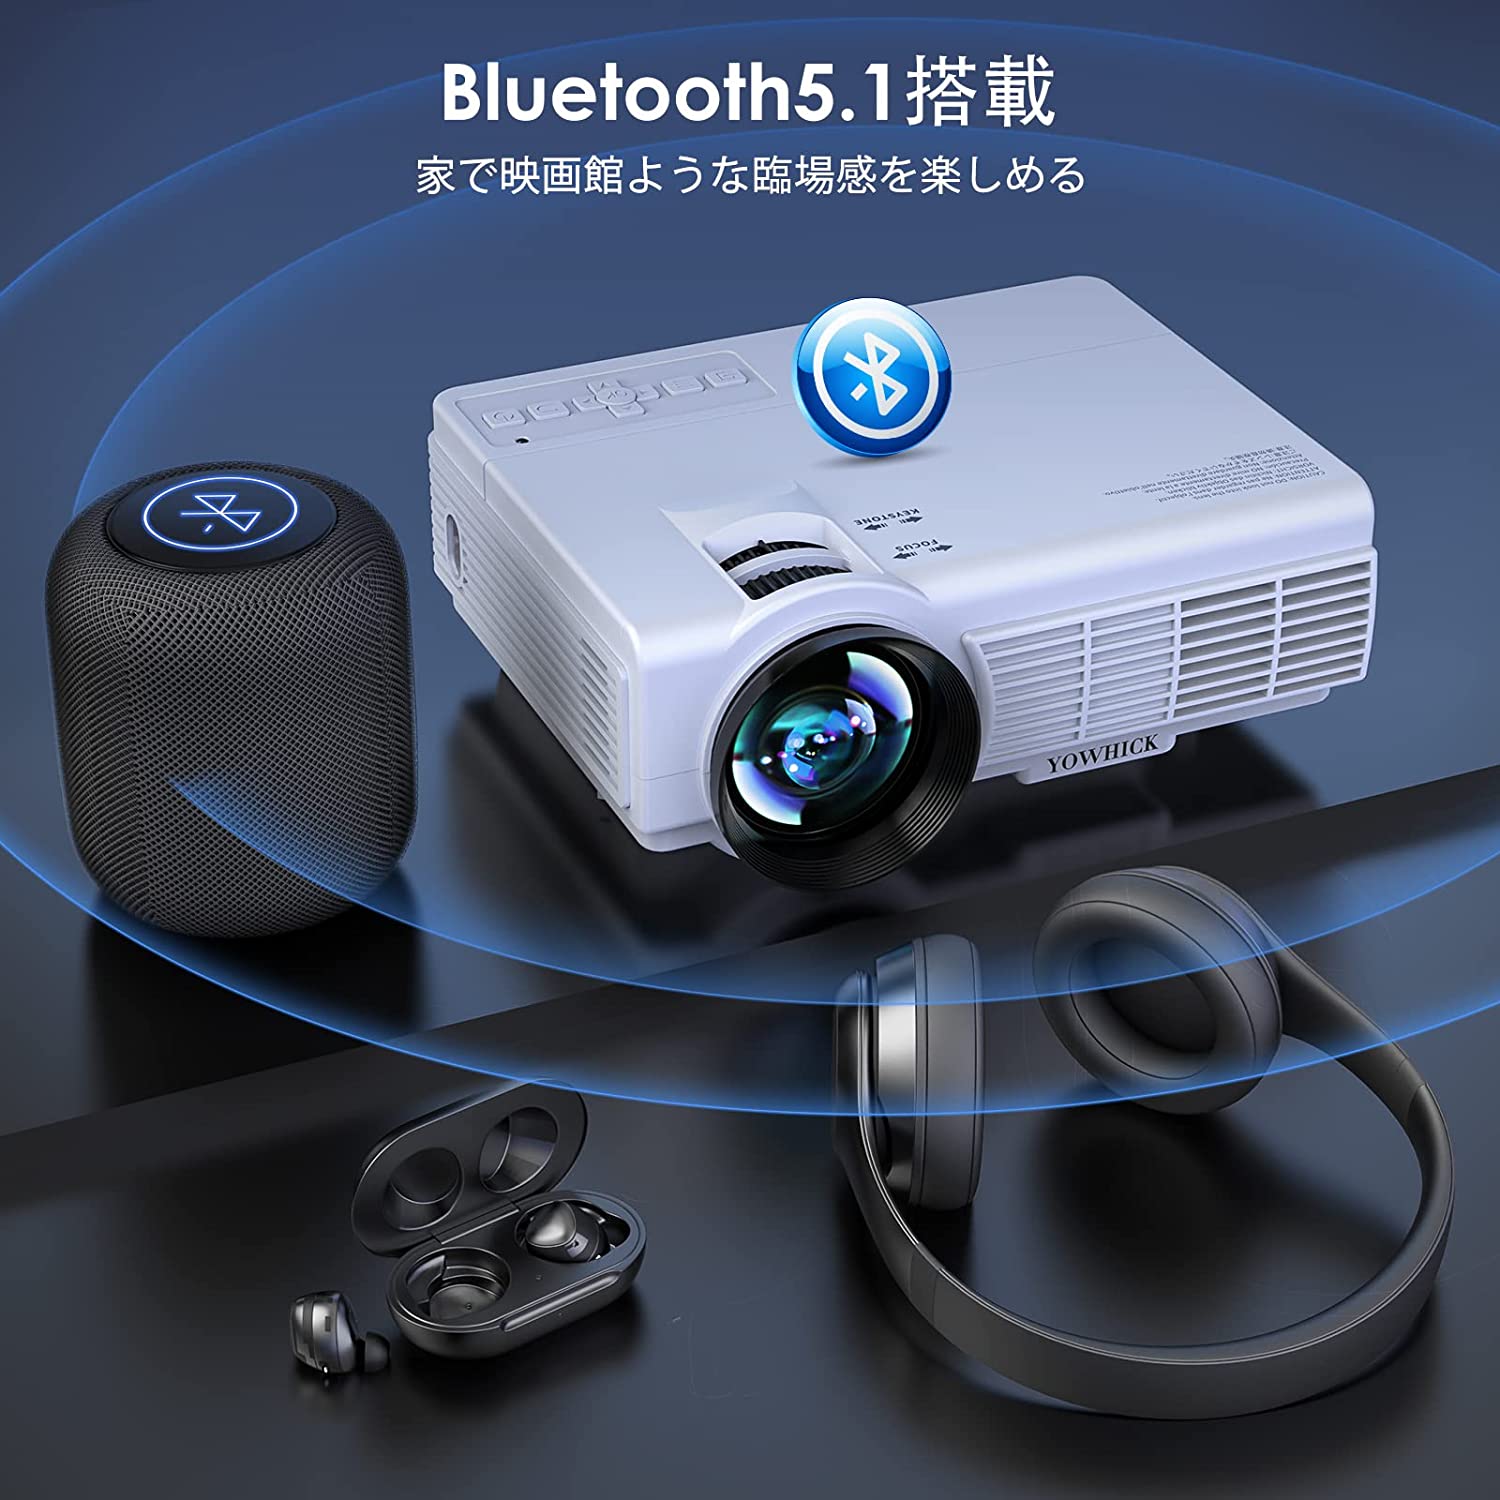 【5GWiFi&Bluetooth5.1対応】 プロジェクター 小型 ホームプロジェクター 8000LM 1080P フルHD 4K対応 100